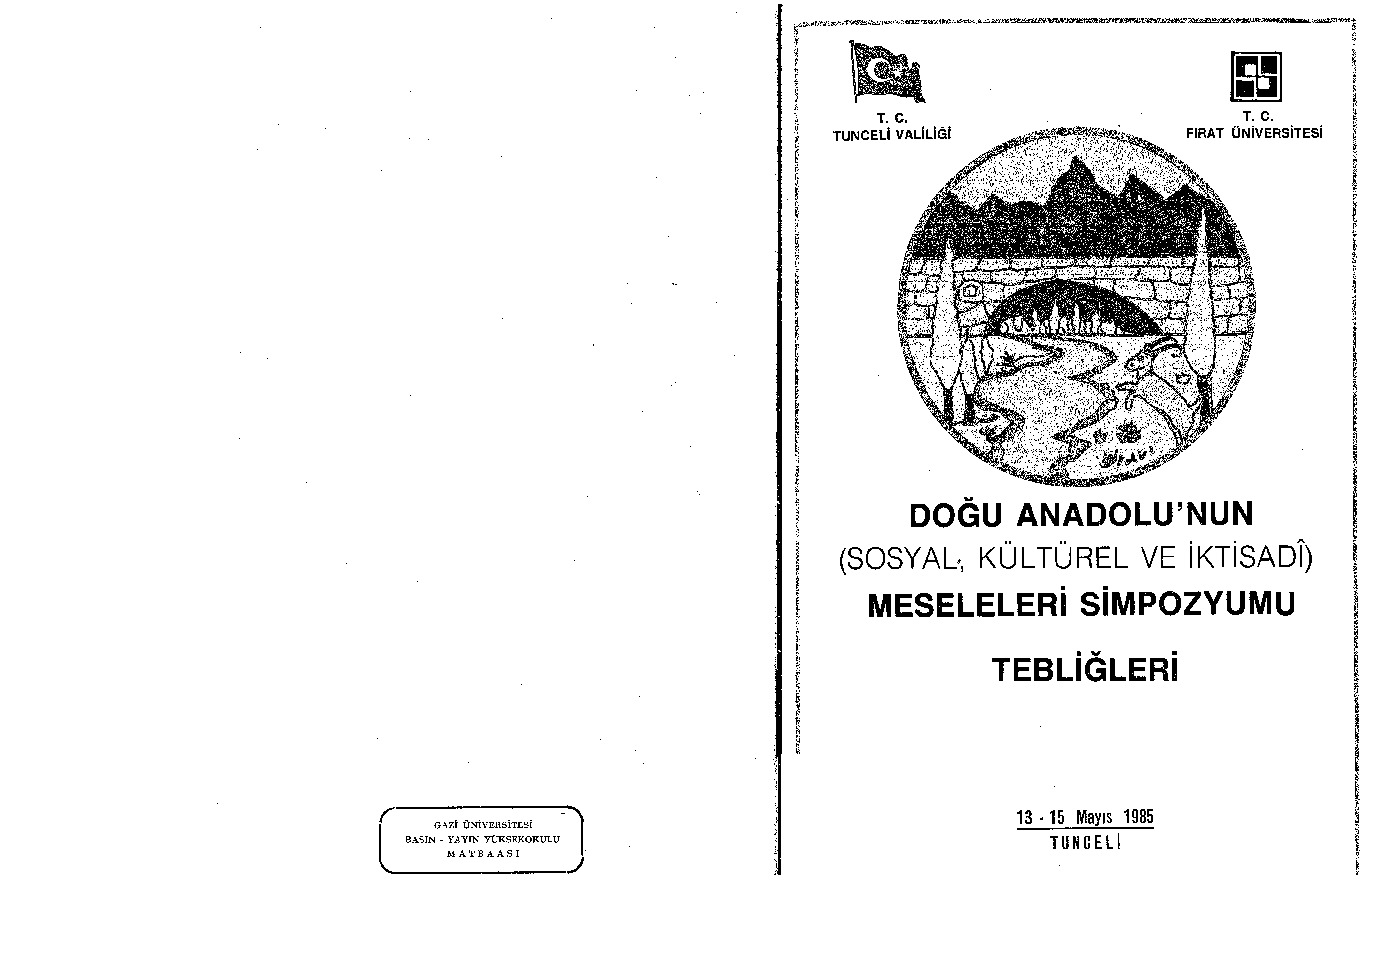 Doğu Anadolunun Meseleleri Simpozyomu-1985-445s